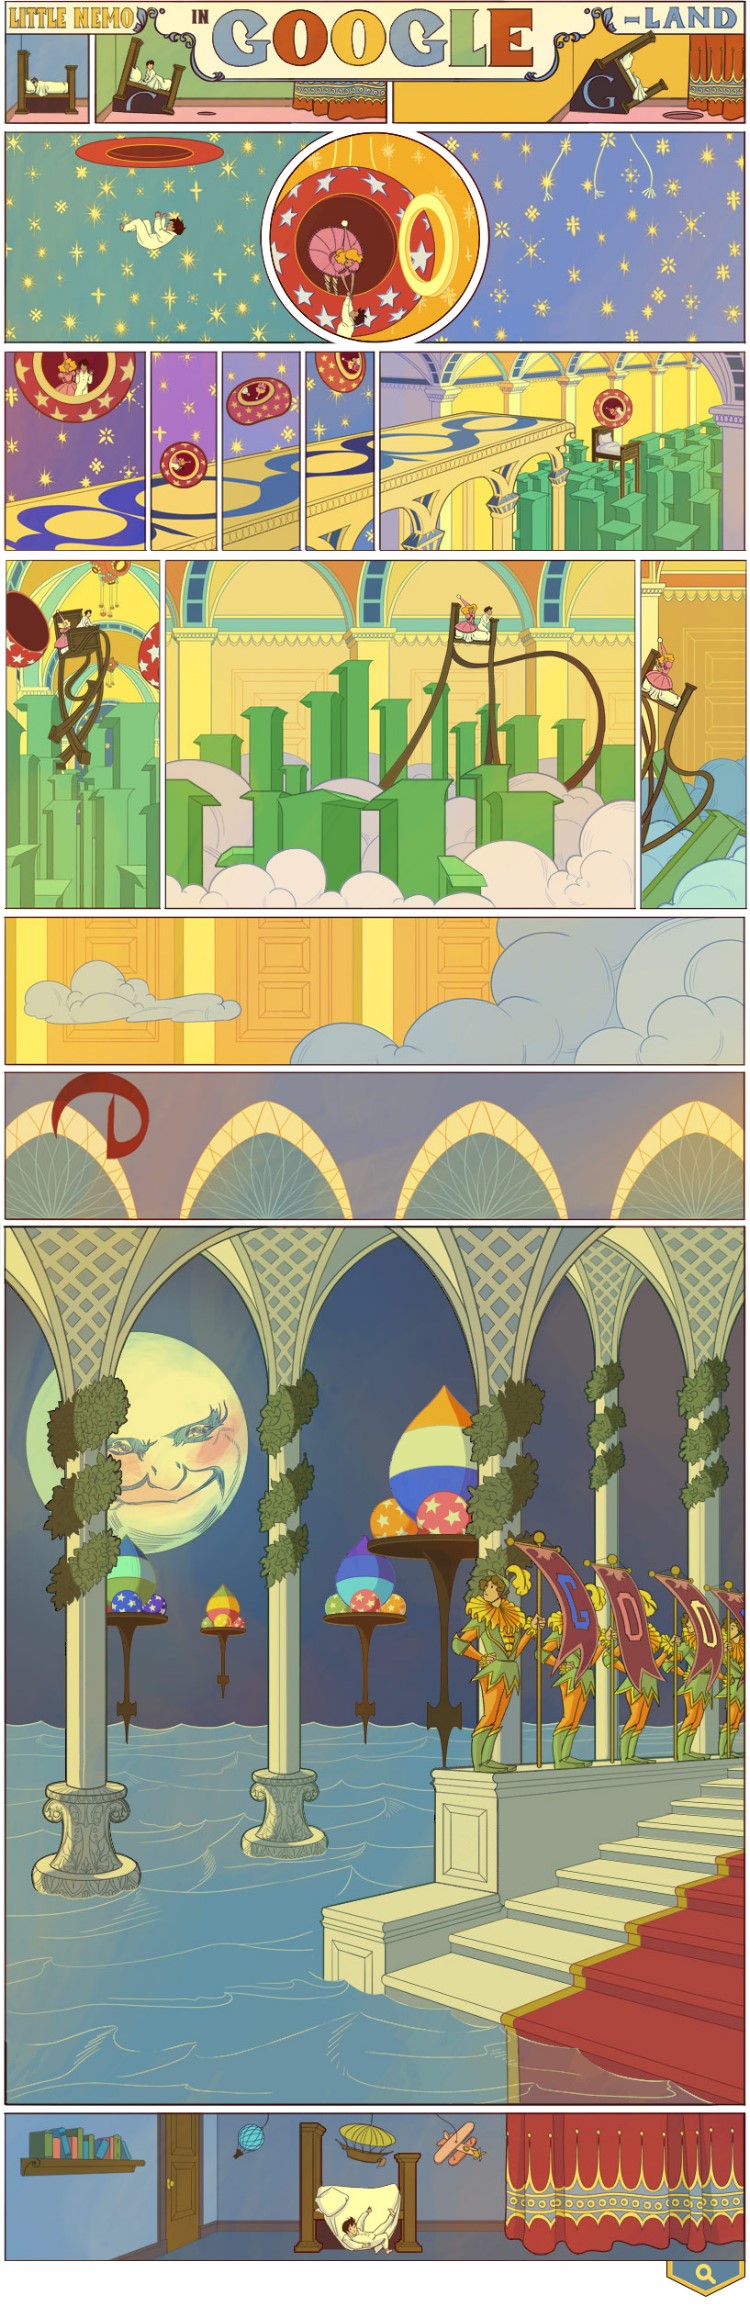 Новый дудл от Гугла. К 107 летию комикса «Маленький Немо в стране снов»